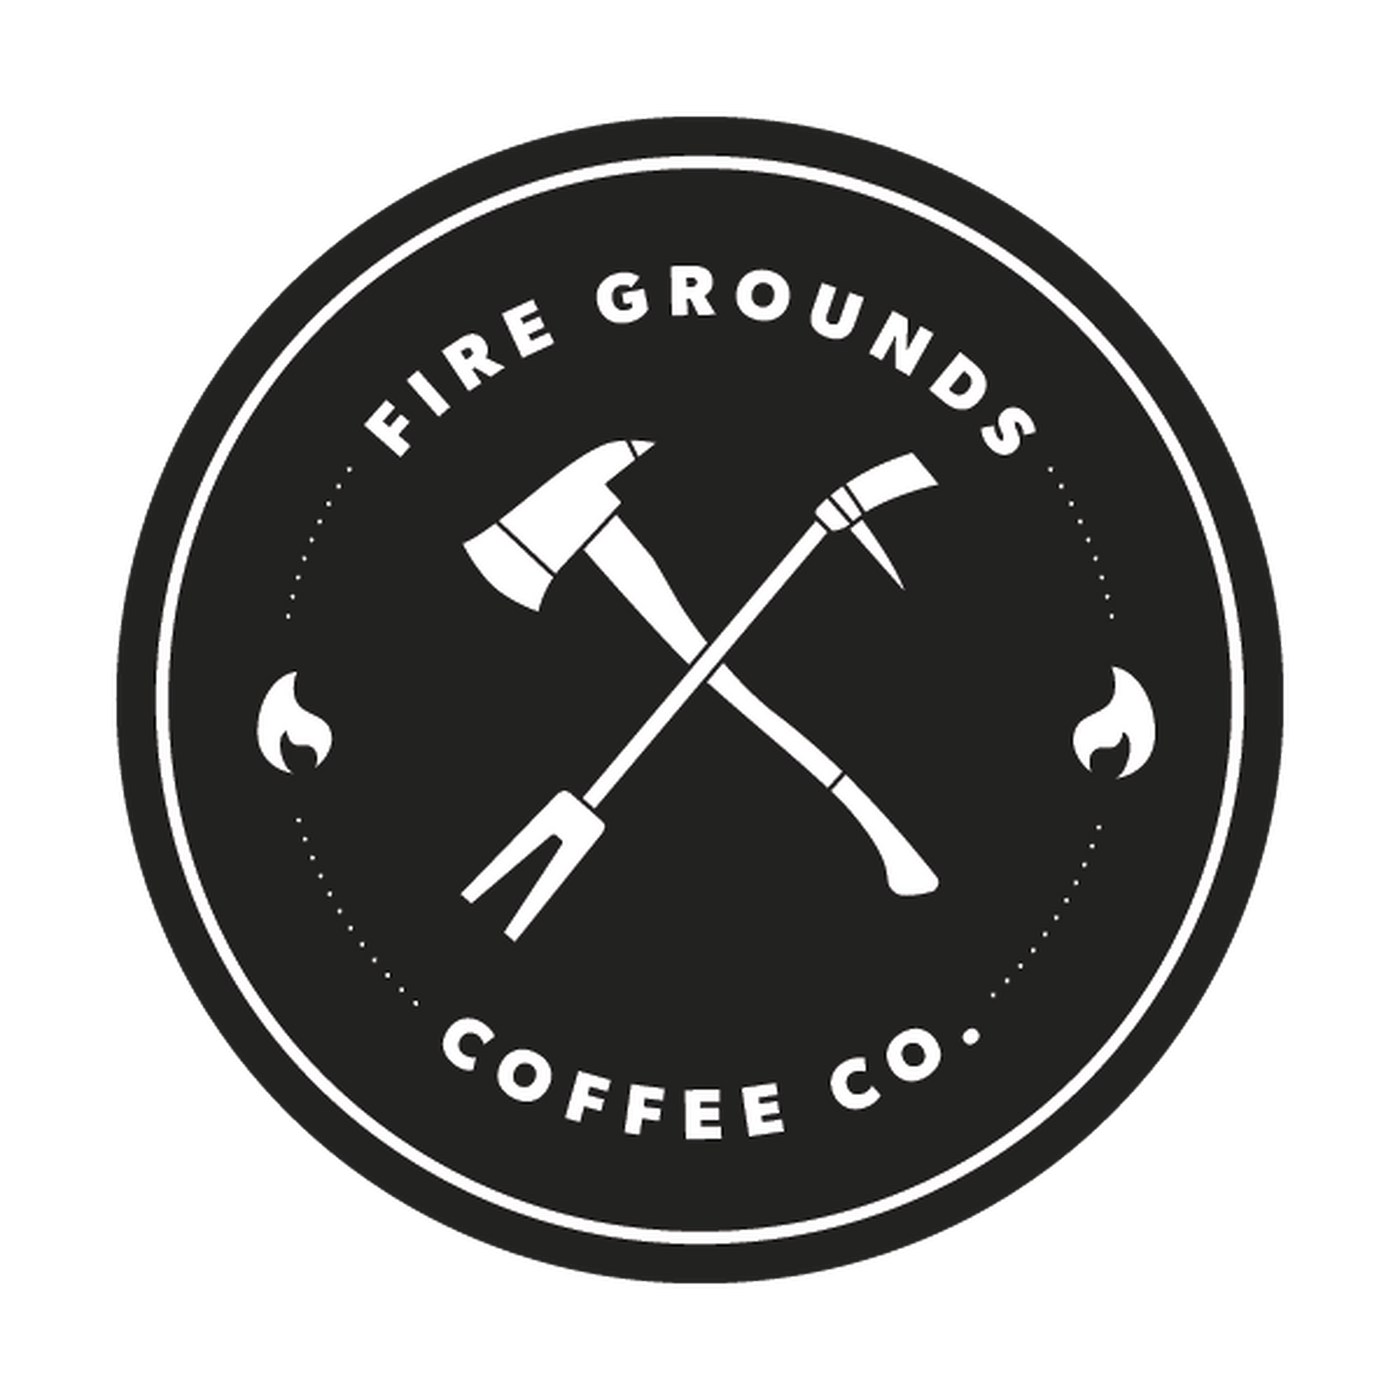 Fire Grounds Logo Sticker